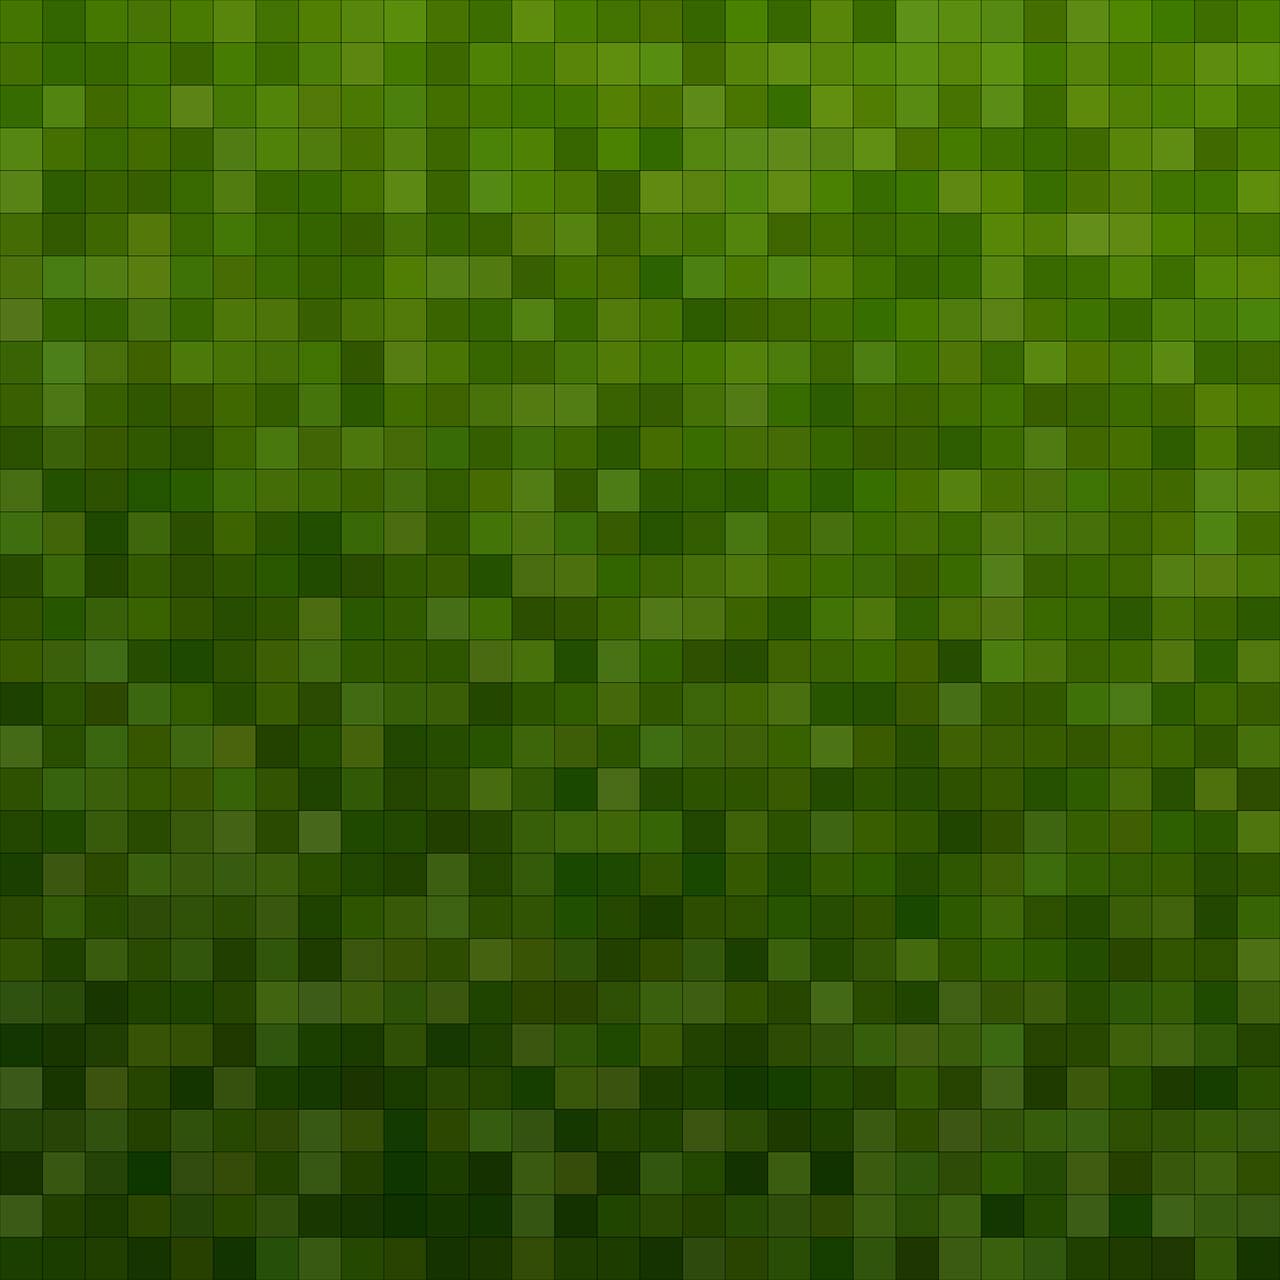 Pixel art